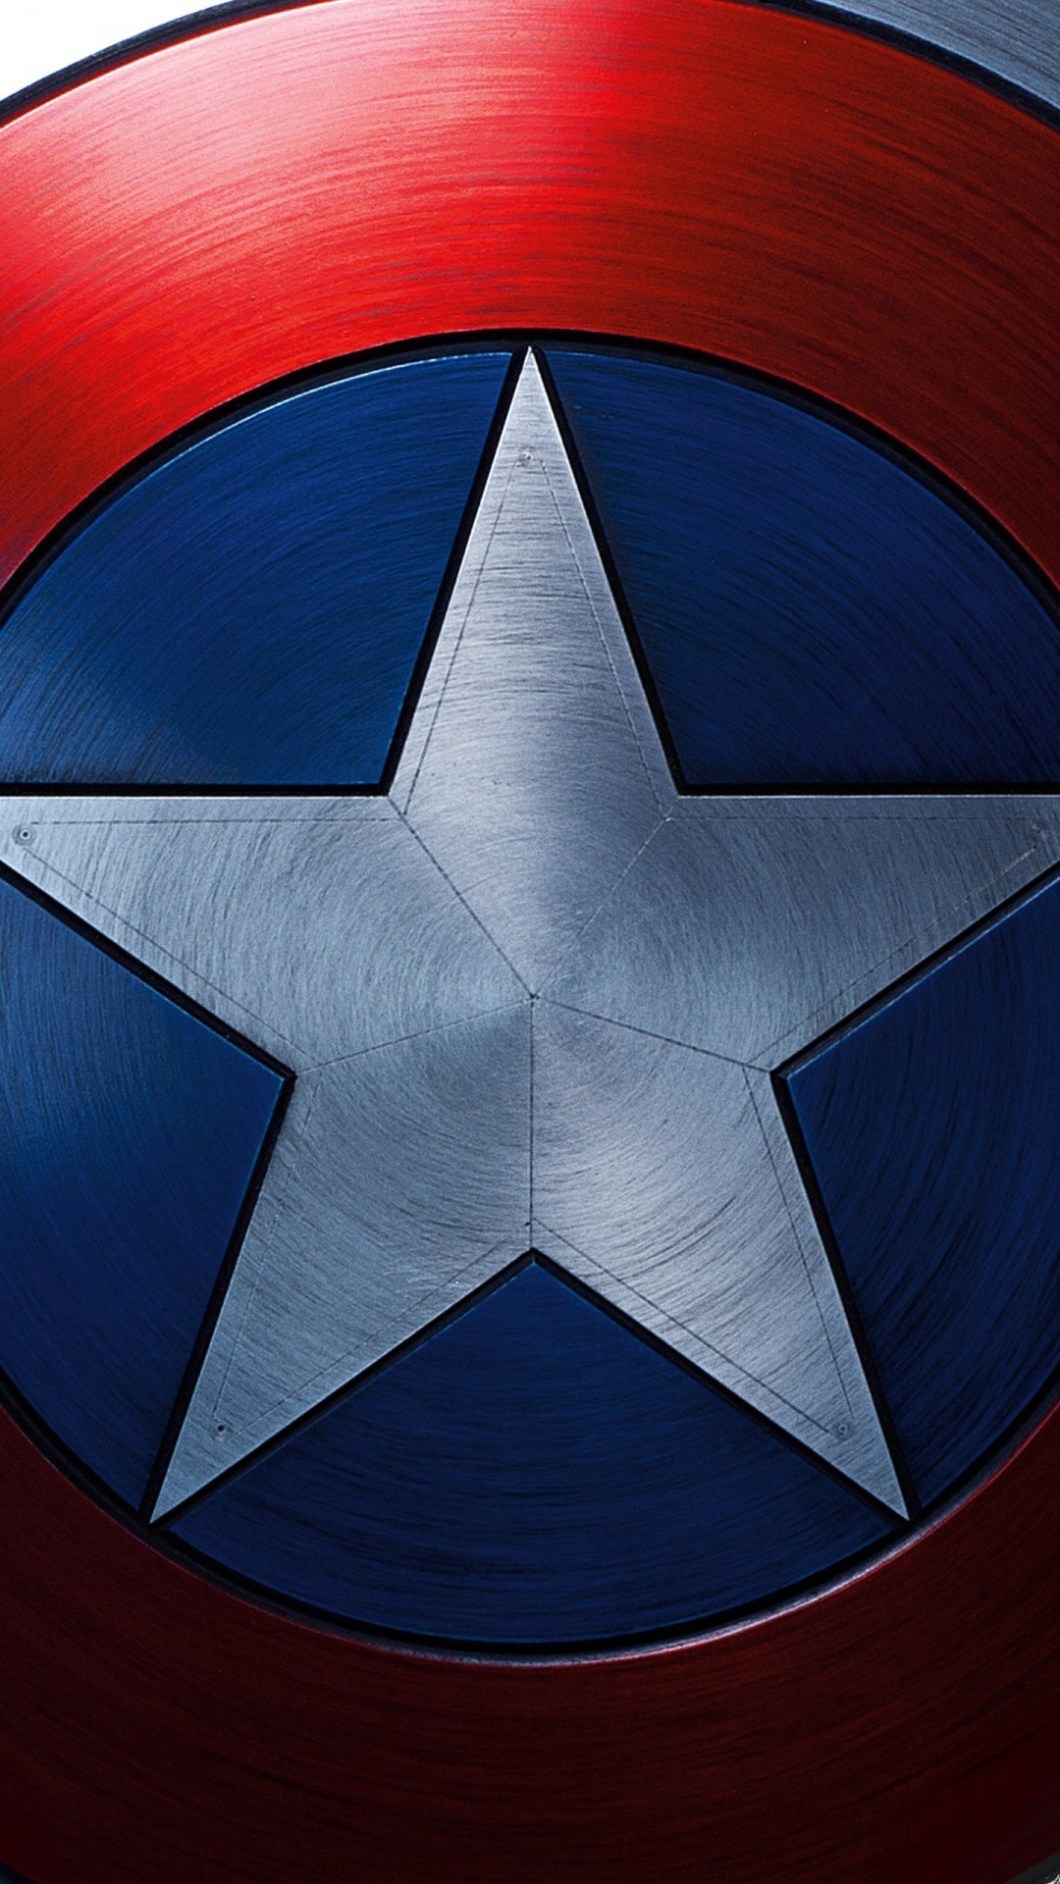 fond d'écran captain america pour android,bleu,capitaine amérique,bleu électrique,personnage fictif,super héros